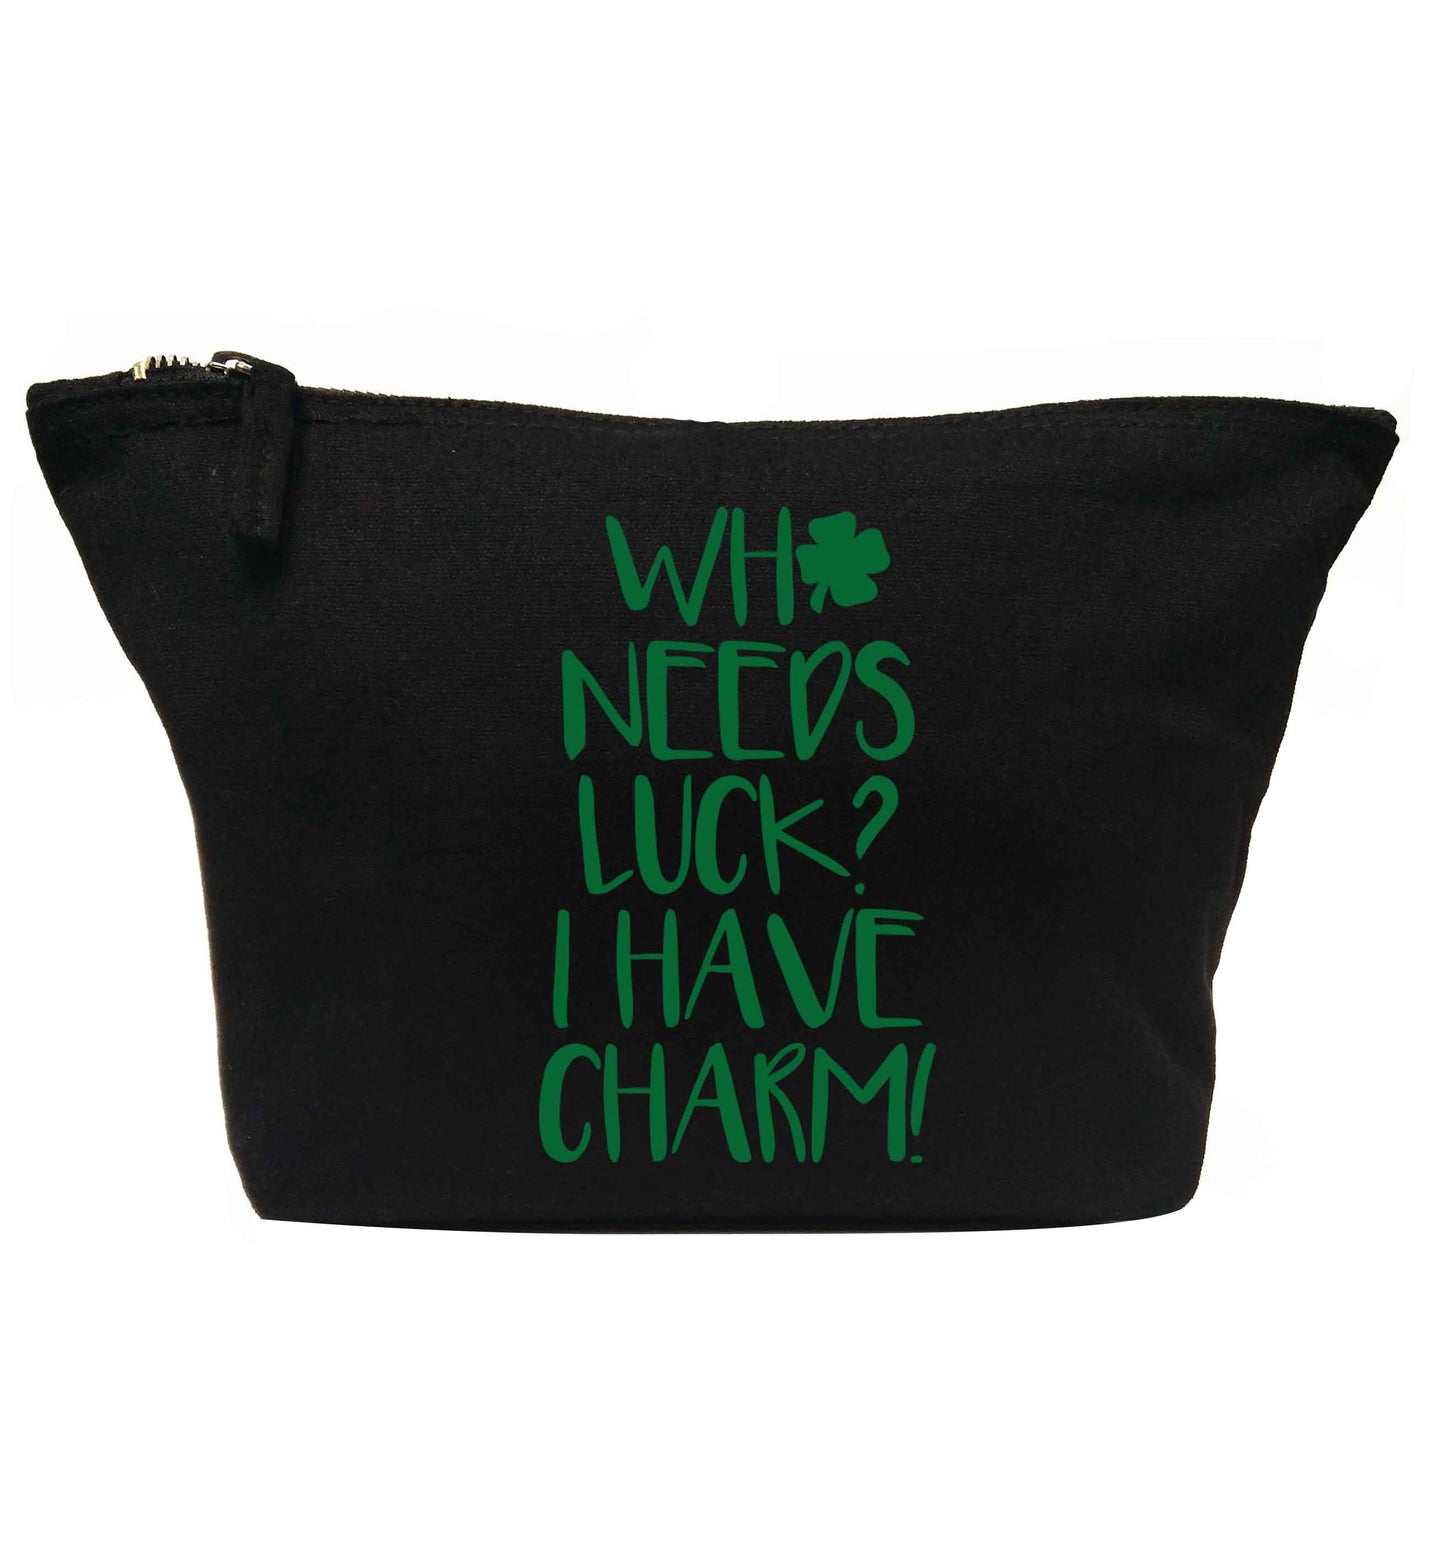 Who needs luck? I have charm! | Makeup / wash bag